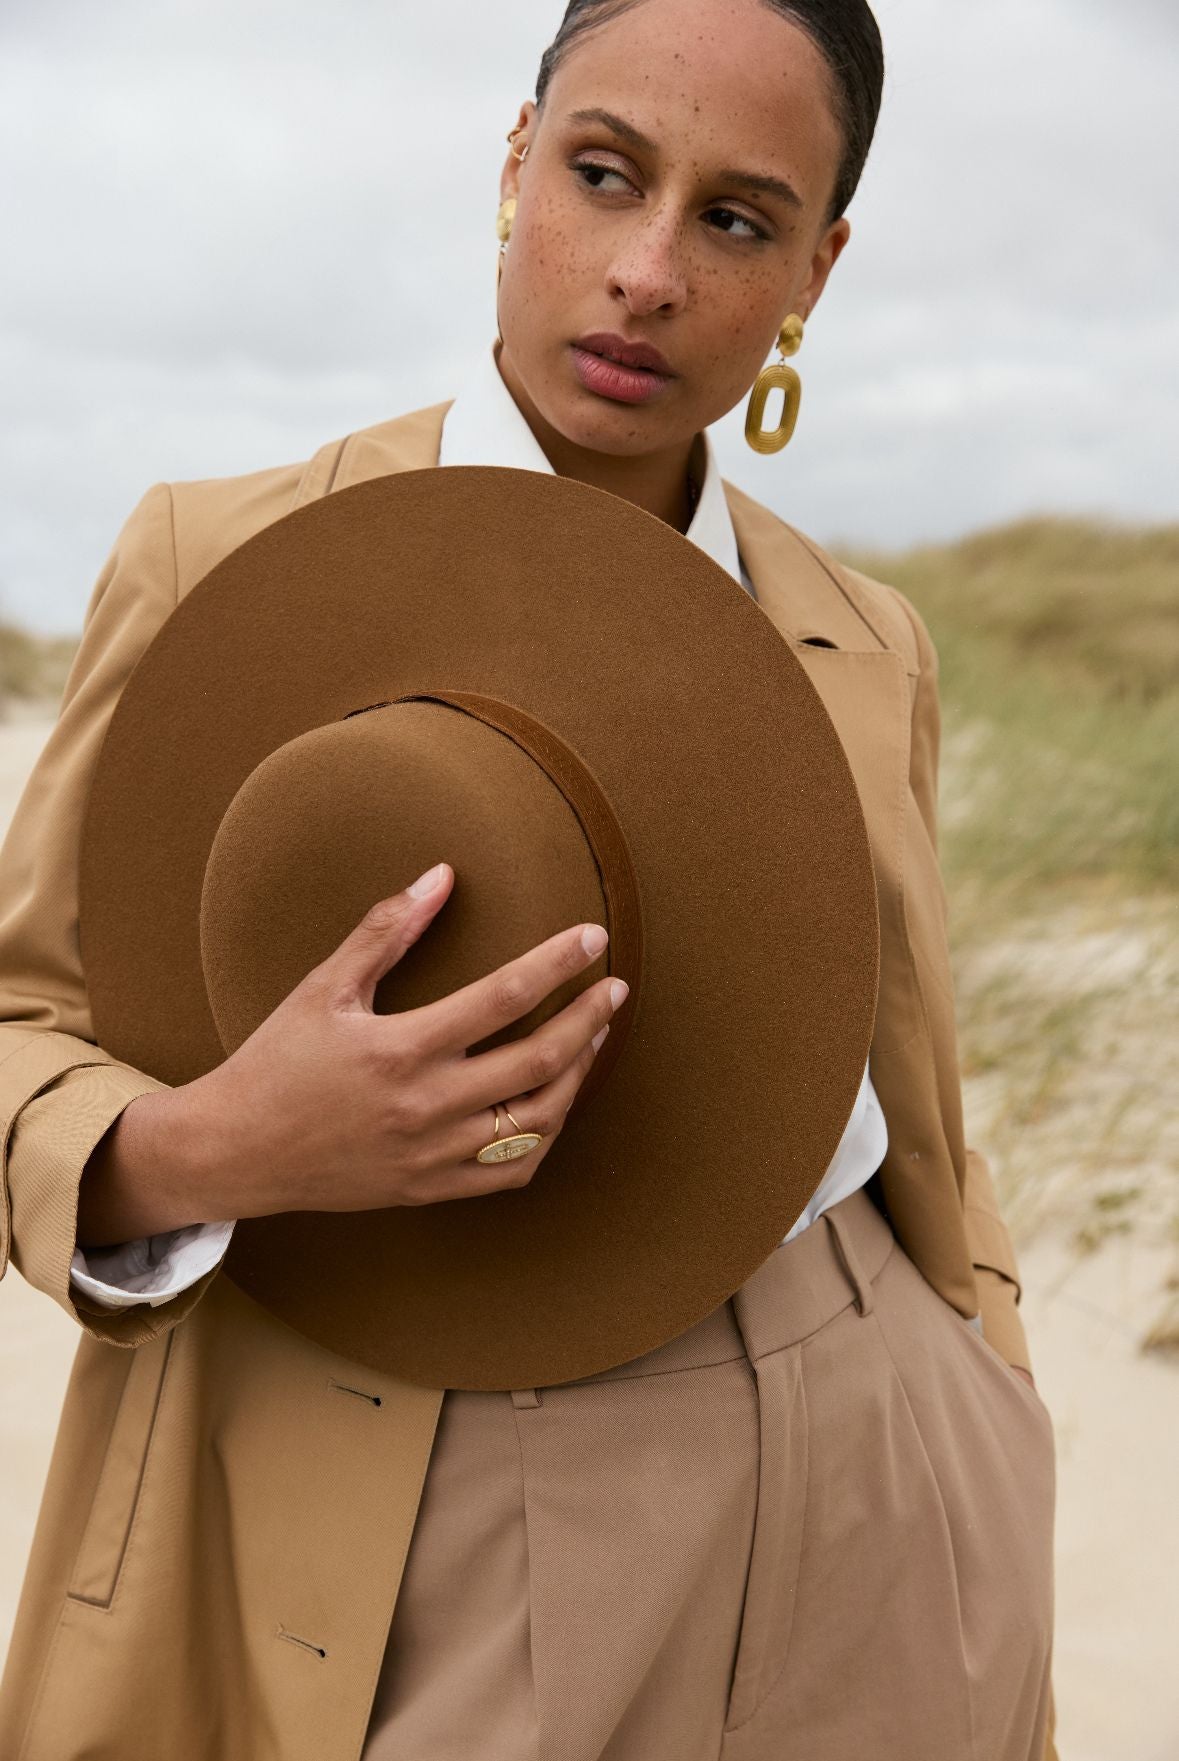 Une femme en manteau et chapeau marron debout dans le sable.